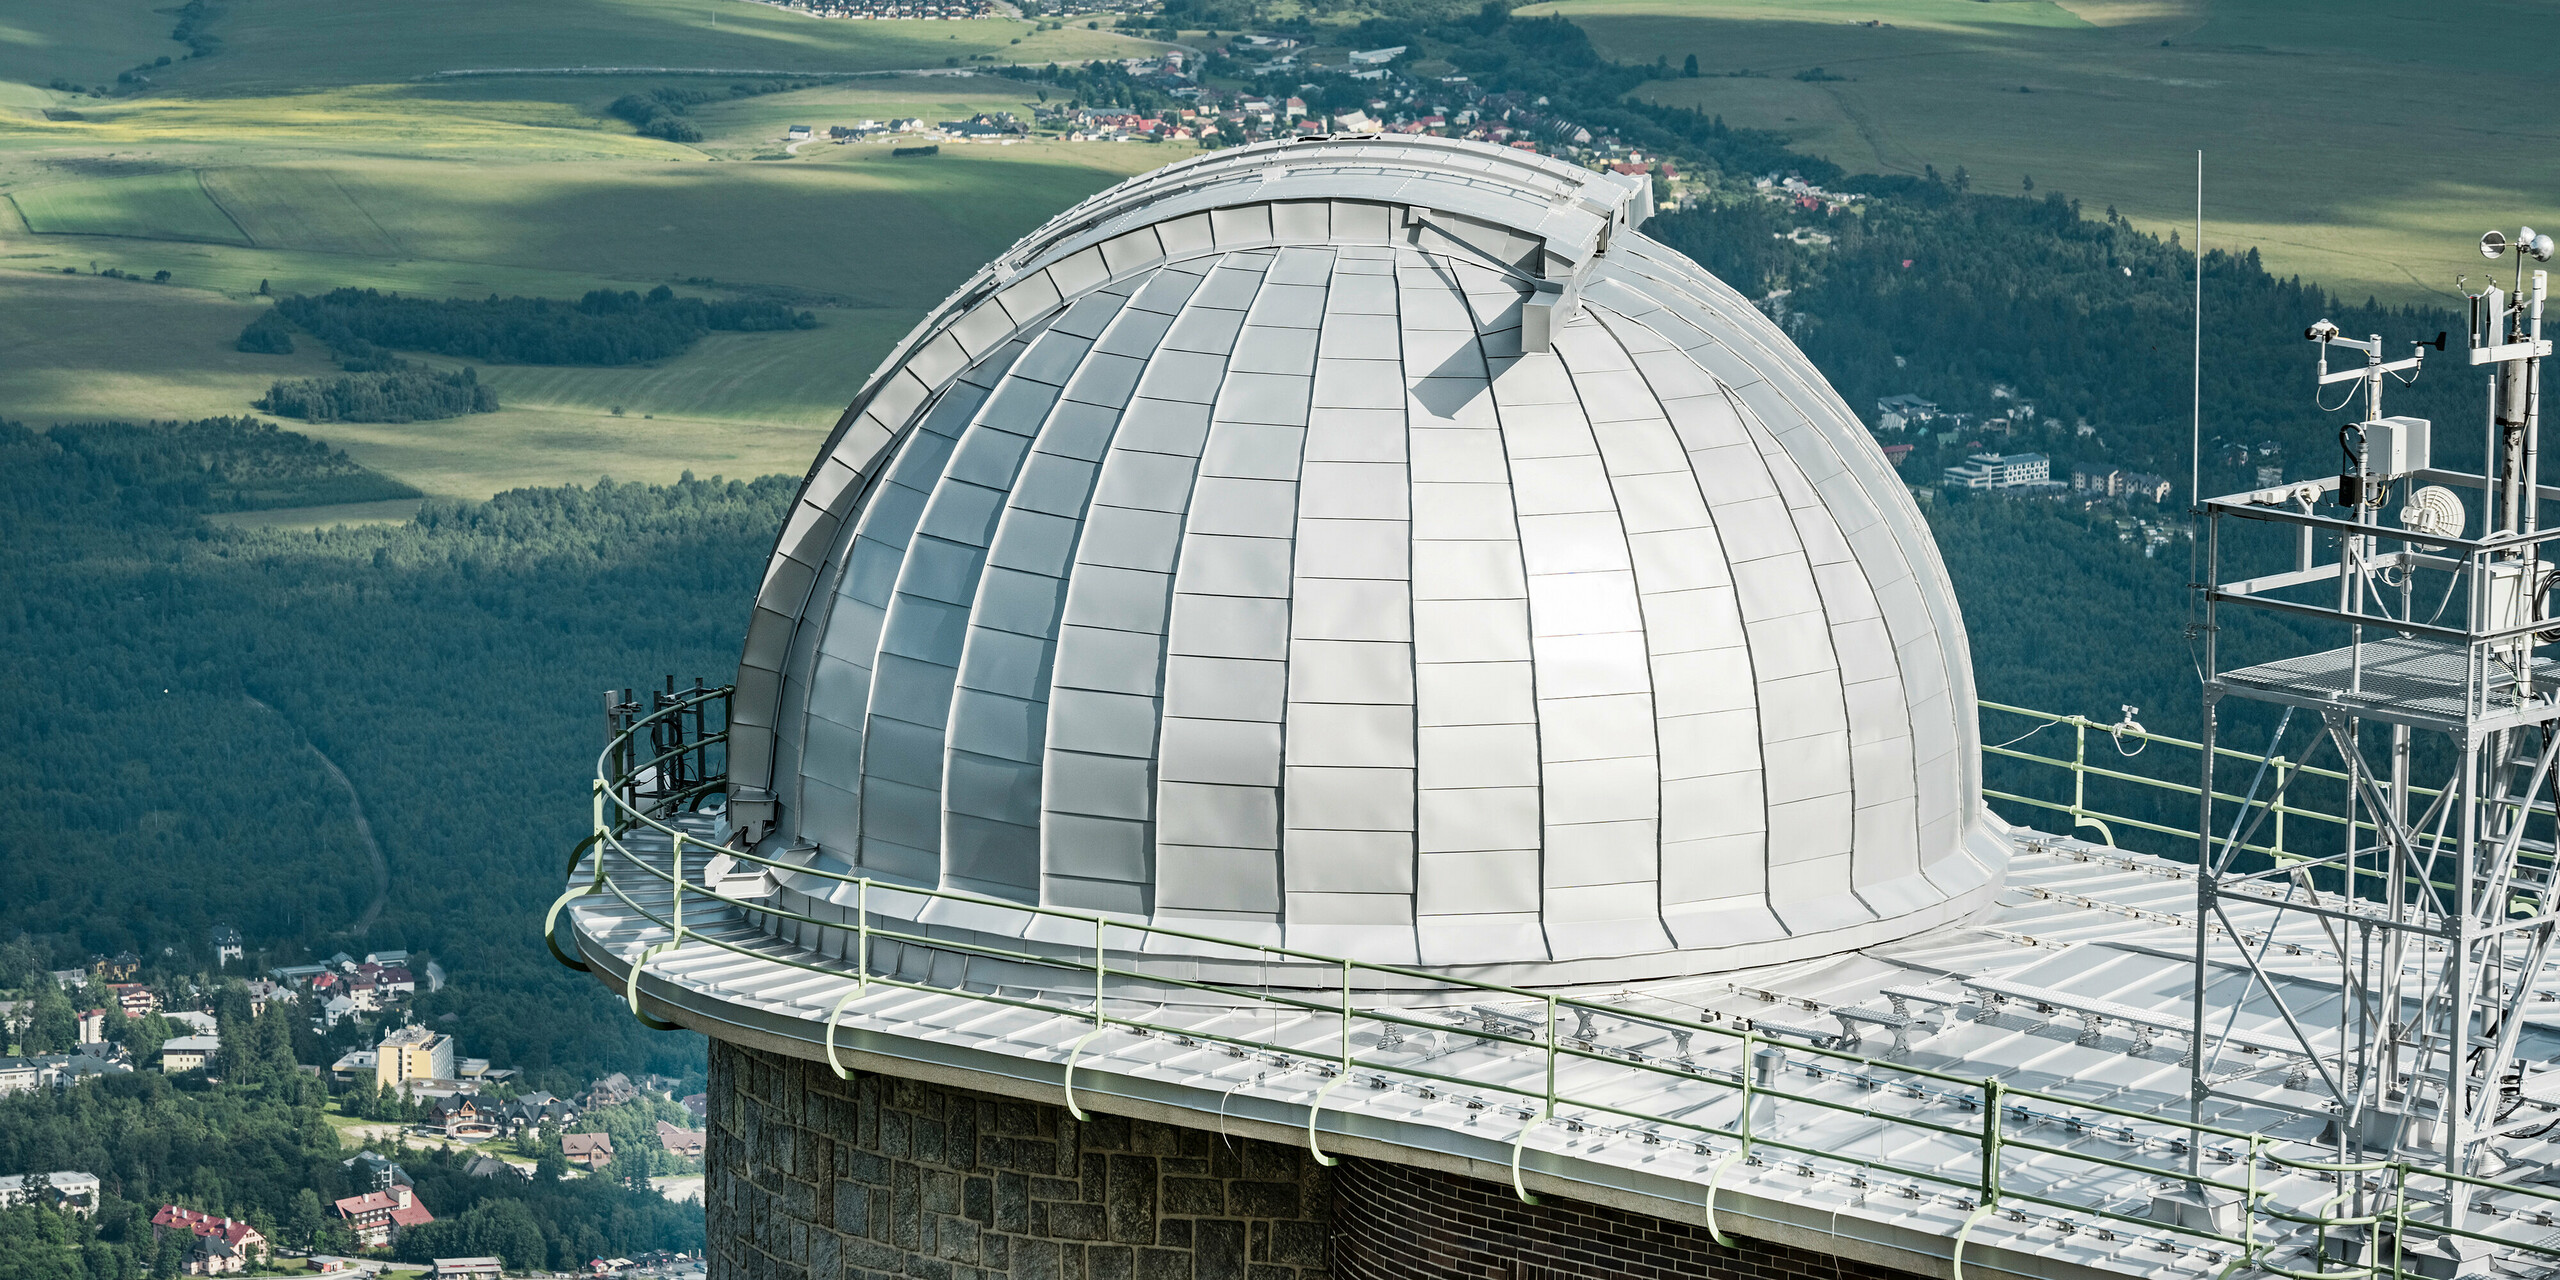 Panoramablick auf die beeindruckende Kuppel des Observatoriums von Skalnate Pleso, das sich meisterhaft in die malerische Landschaft der Hohen Tatra einfügt. Die silbermetallische Aluminiumverkleidung PREFALZ schimmert im Kontrast zum üppigen Grün der umliegenden Wälder und den subtilen Konturen der ländlichen Landschaft. Dieses architektonische Juwel, das auf einer Höhe von 1.783 Metern über dem Meeresspiegel liegt, ist nicht nur ein Wahrzeichen astronomischer Entdeckungen seit 1943, sondern auch ein Beweis für die Langlebigkeit und Umweltverträglichkeit von PREFA Aluminiumprodukten, die durch eine 40-jährige Garantie abgesichert sind.